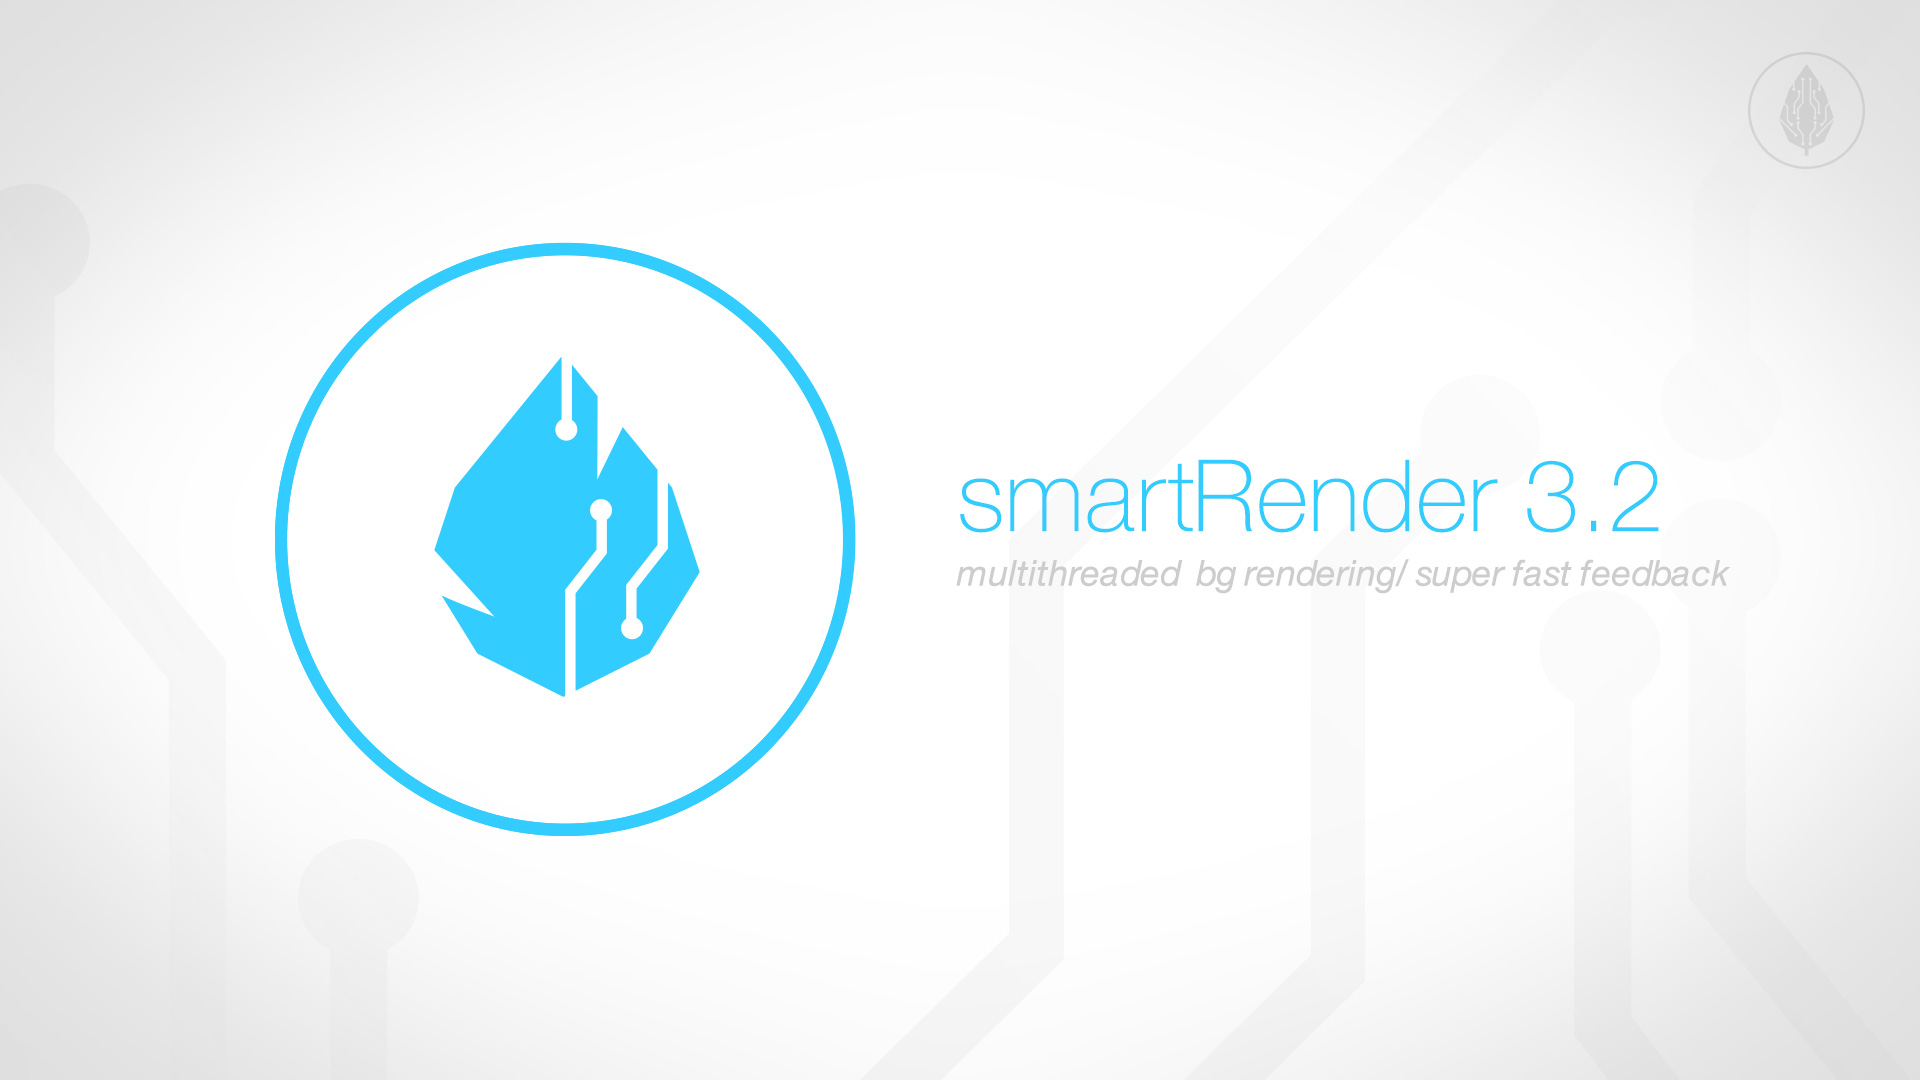 smartRender 3.2